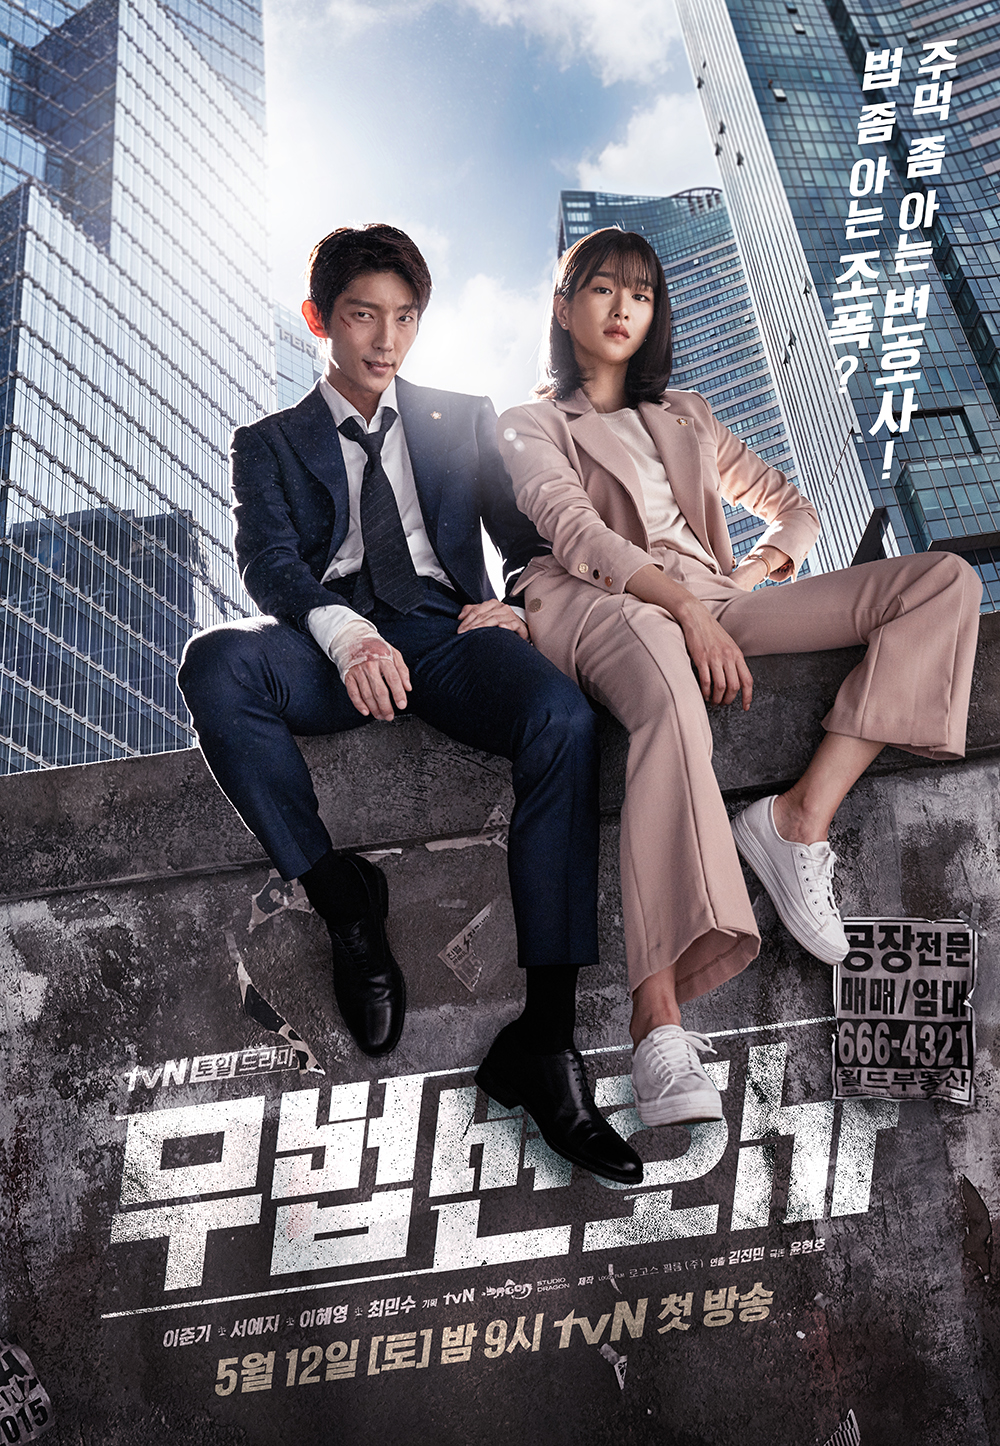 Phim Lee Jun Ki đóng: luật sư vô pháp